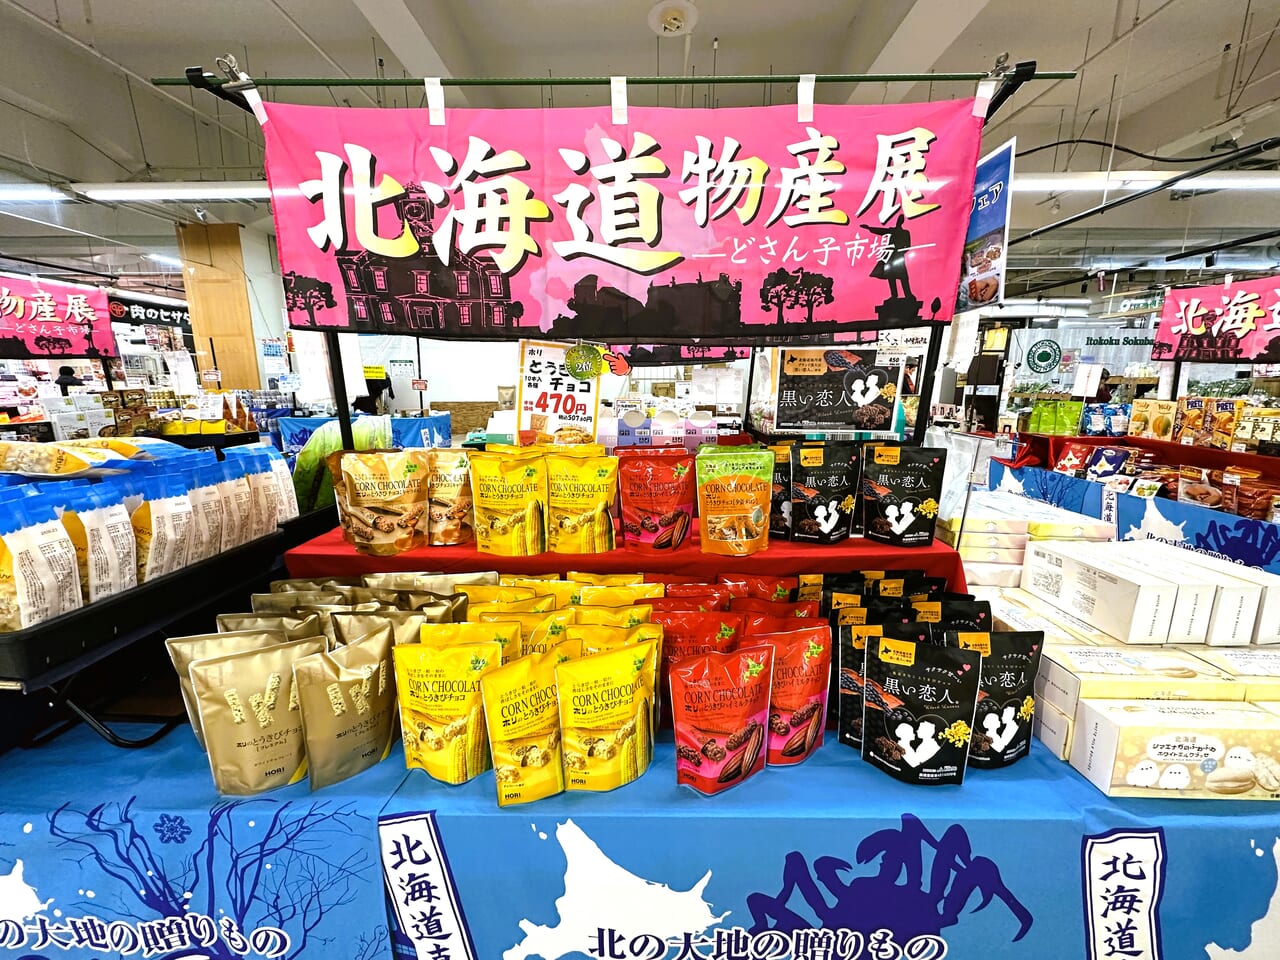 『 北海道物産展 どさん子市場 』が、イオンスタイル笹丘で開催中です。